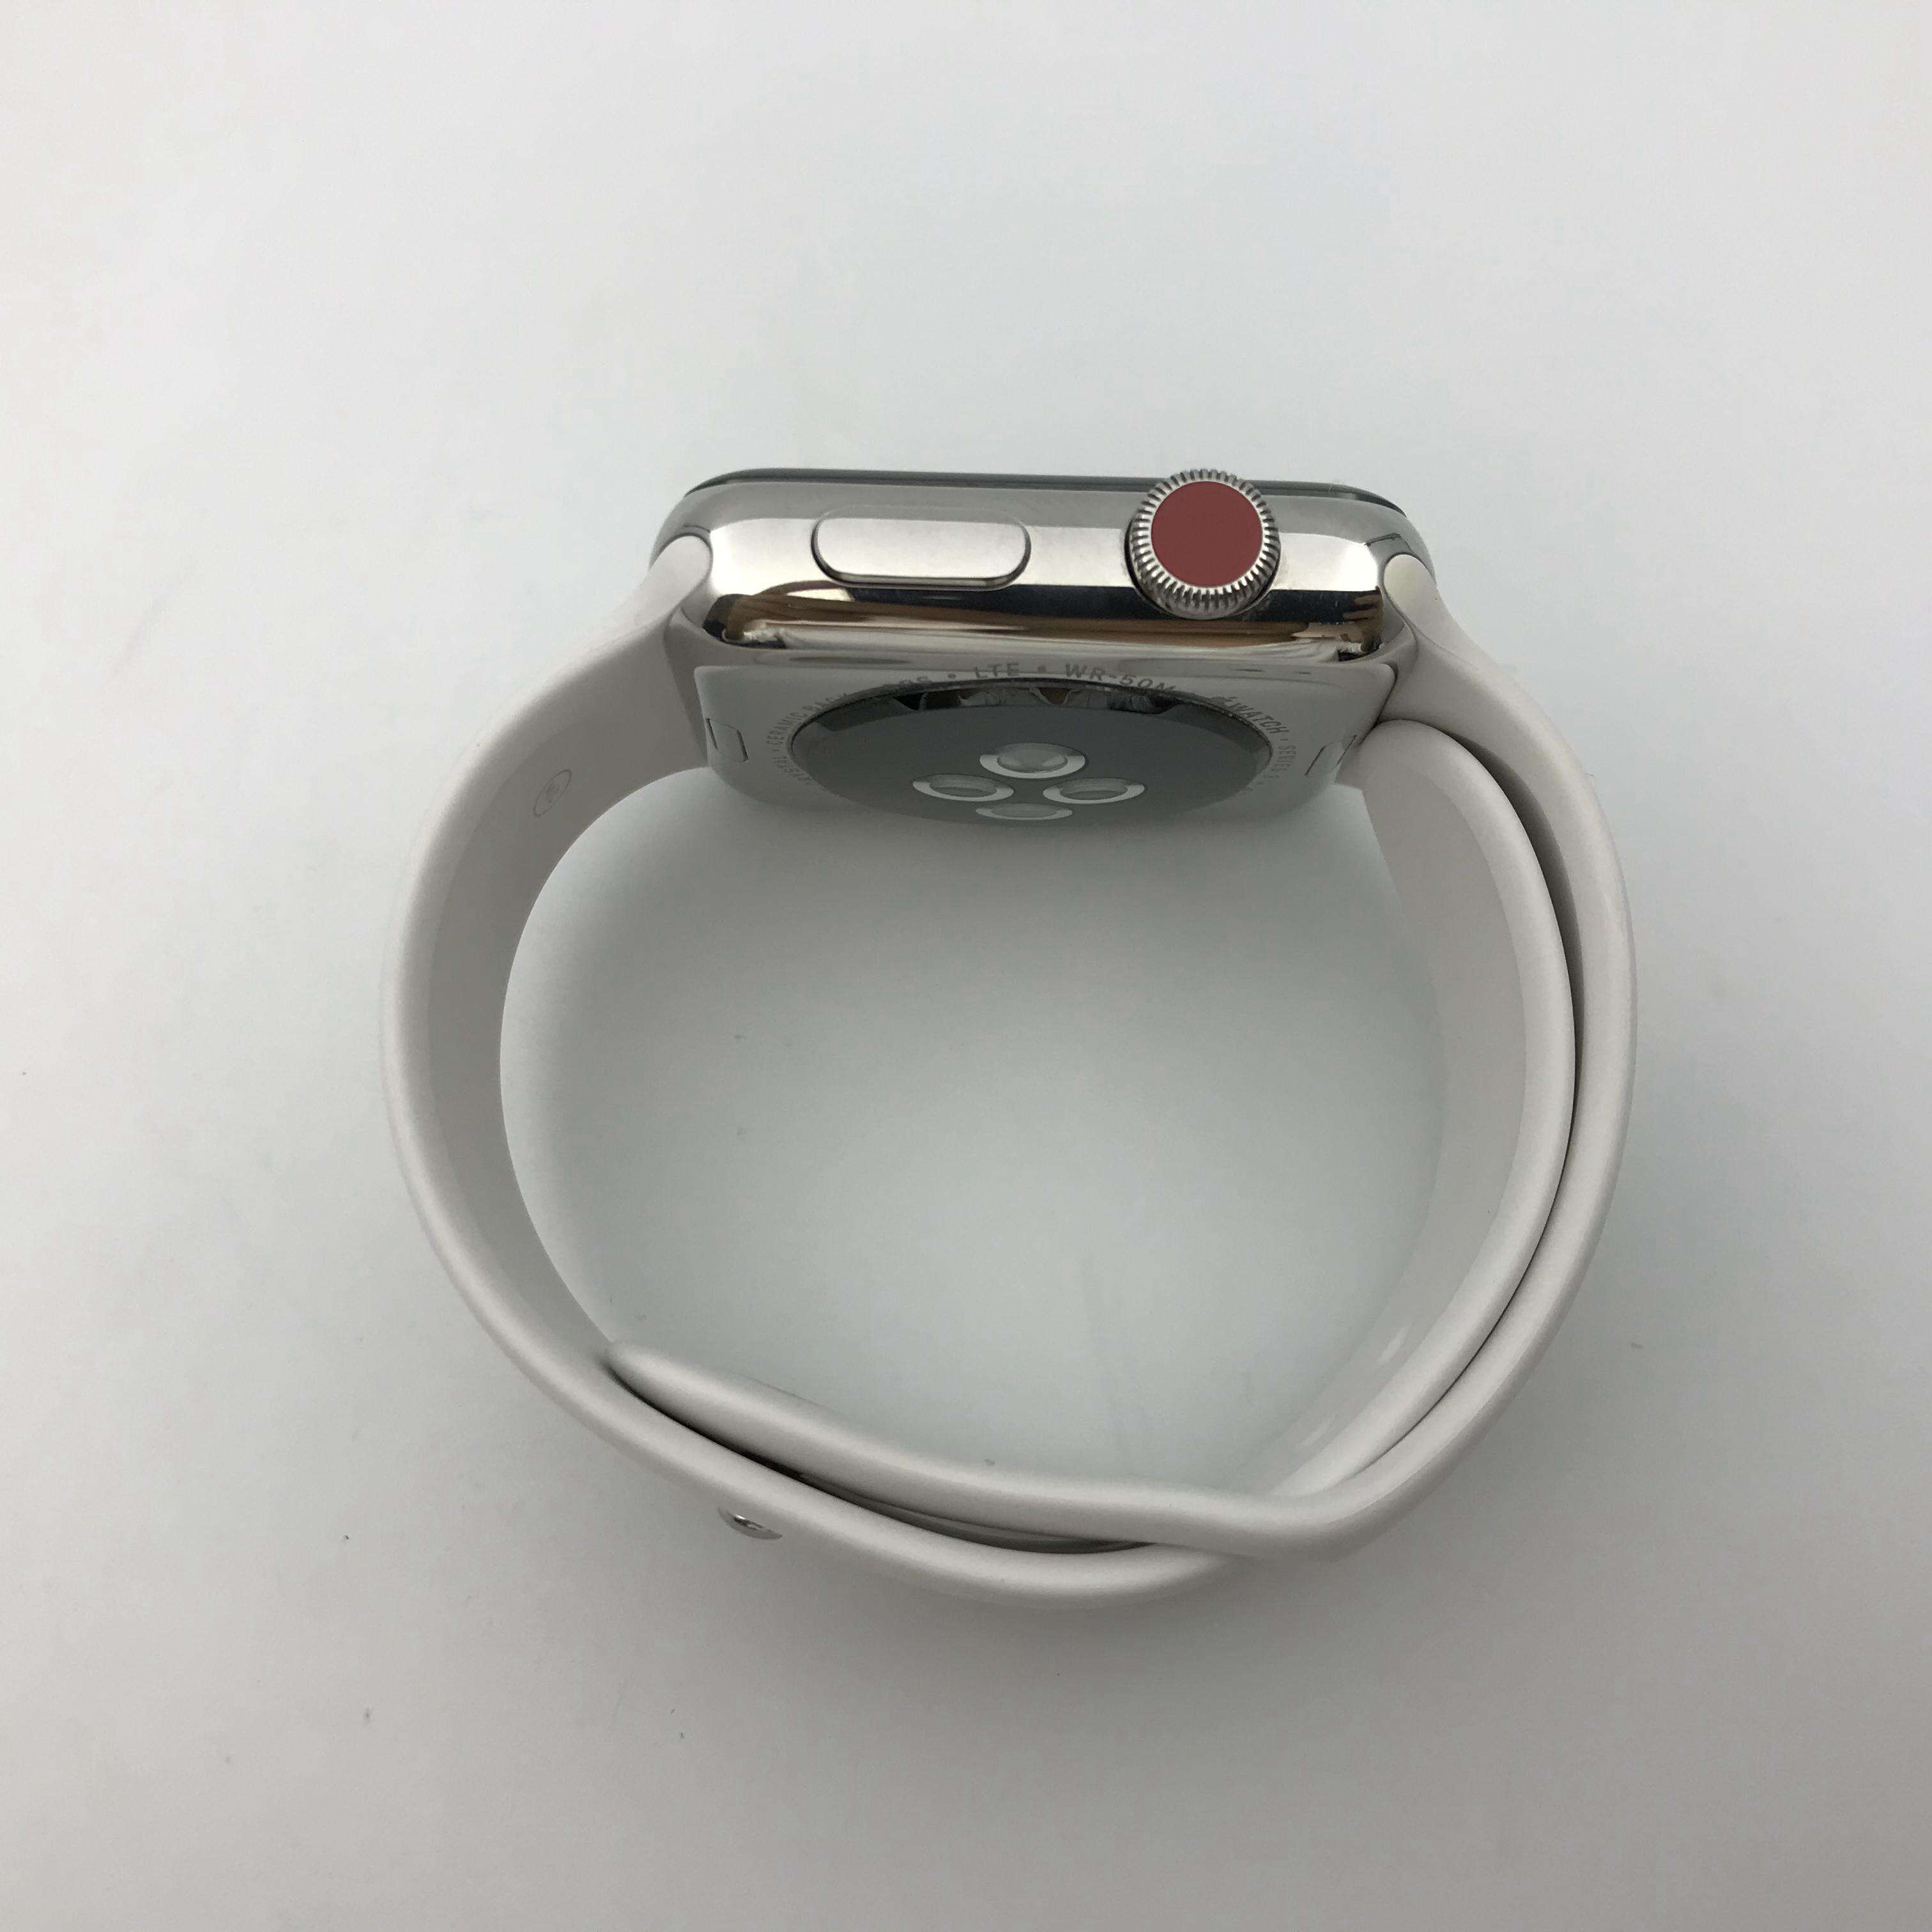 Apple Watch Series 3 不锈钢表壳 42MM 国行蜂窝版